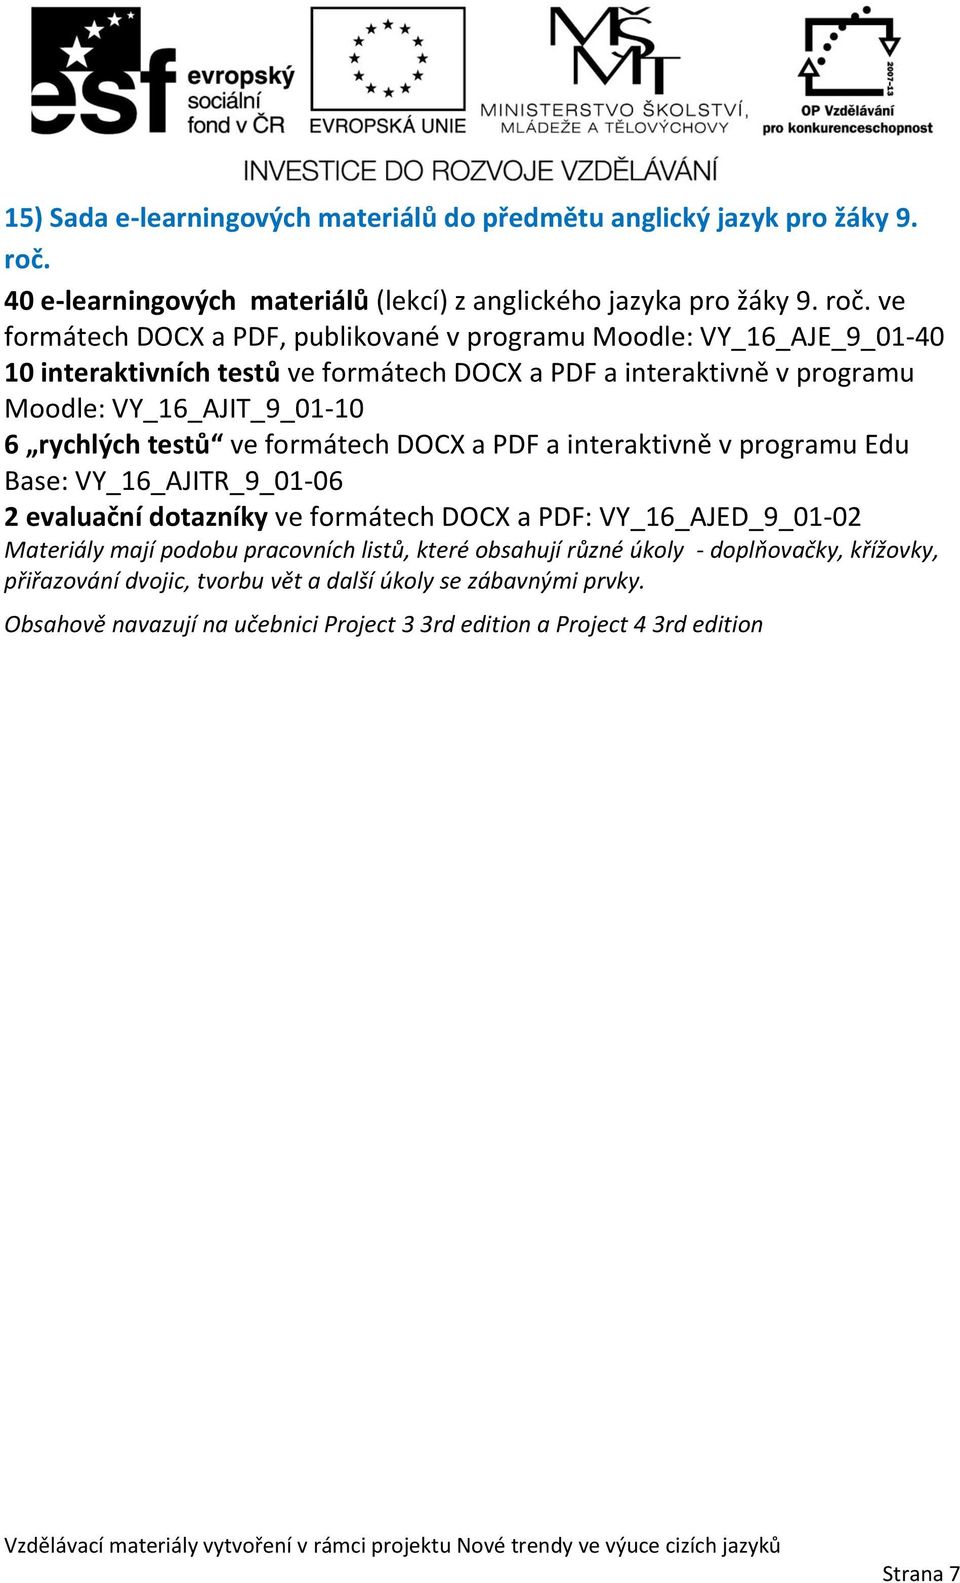 ve formátech DOCX a PDF, publikované v programu Moodle: VY_16_AJE_9_01-40 Moodle: VY_16_AJIT_9_01-10 6 rychlých testů ve formátech DOCX a